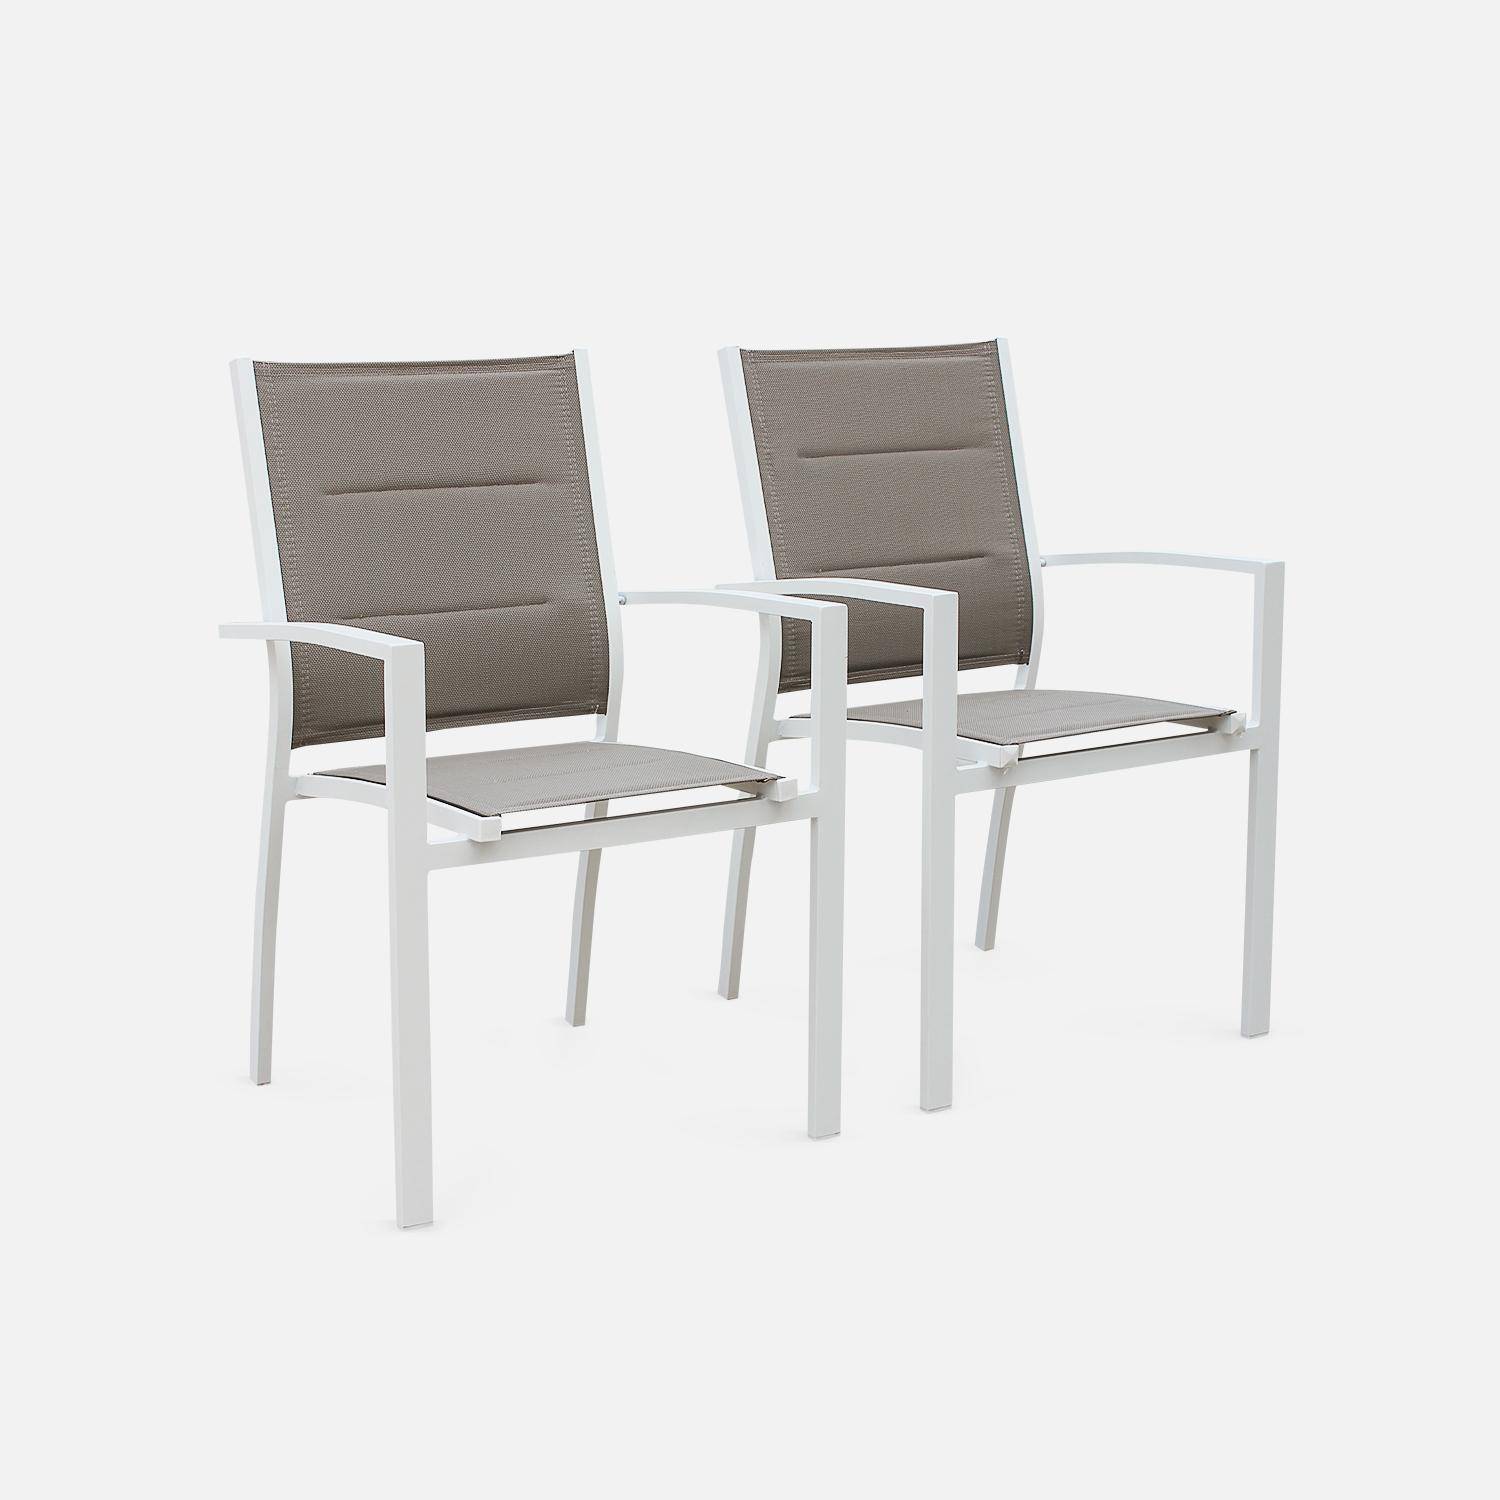 Set da giardino con tavolo allungabile - modello: Chicago 210, colore: Talpa - Tavolo in alluminio, dimensioni: 150/210cm con prolunga e 6 sedute in textilene,sweeek,Photo7